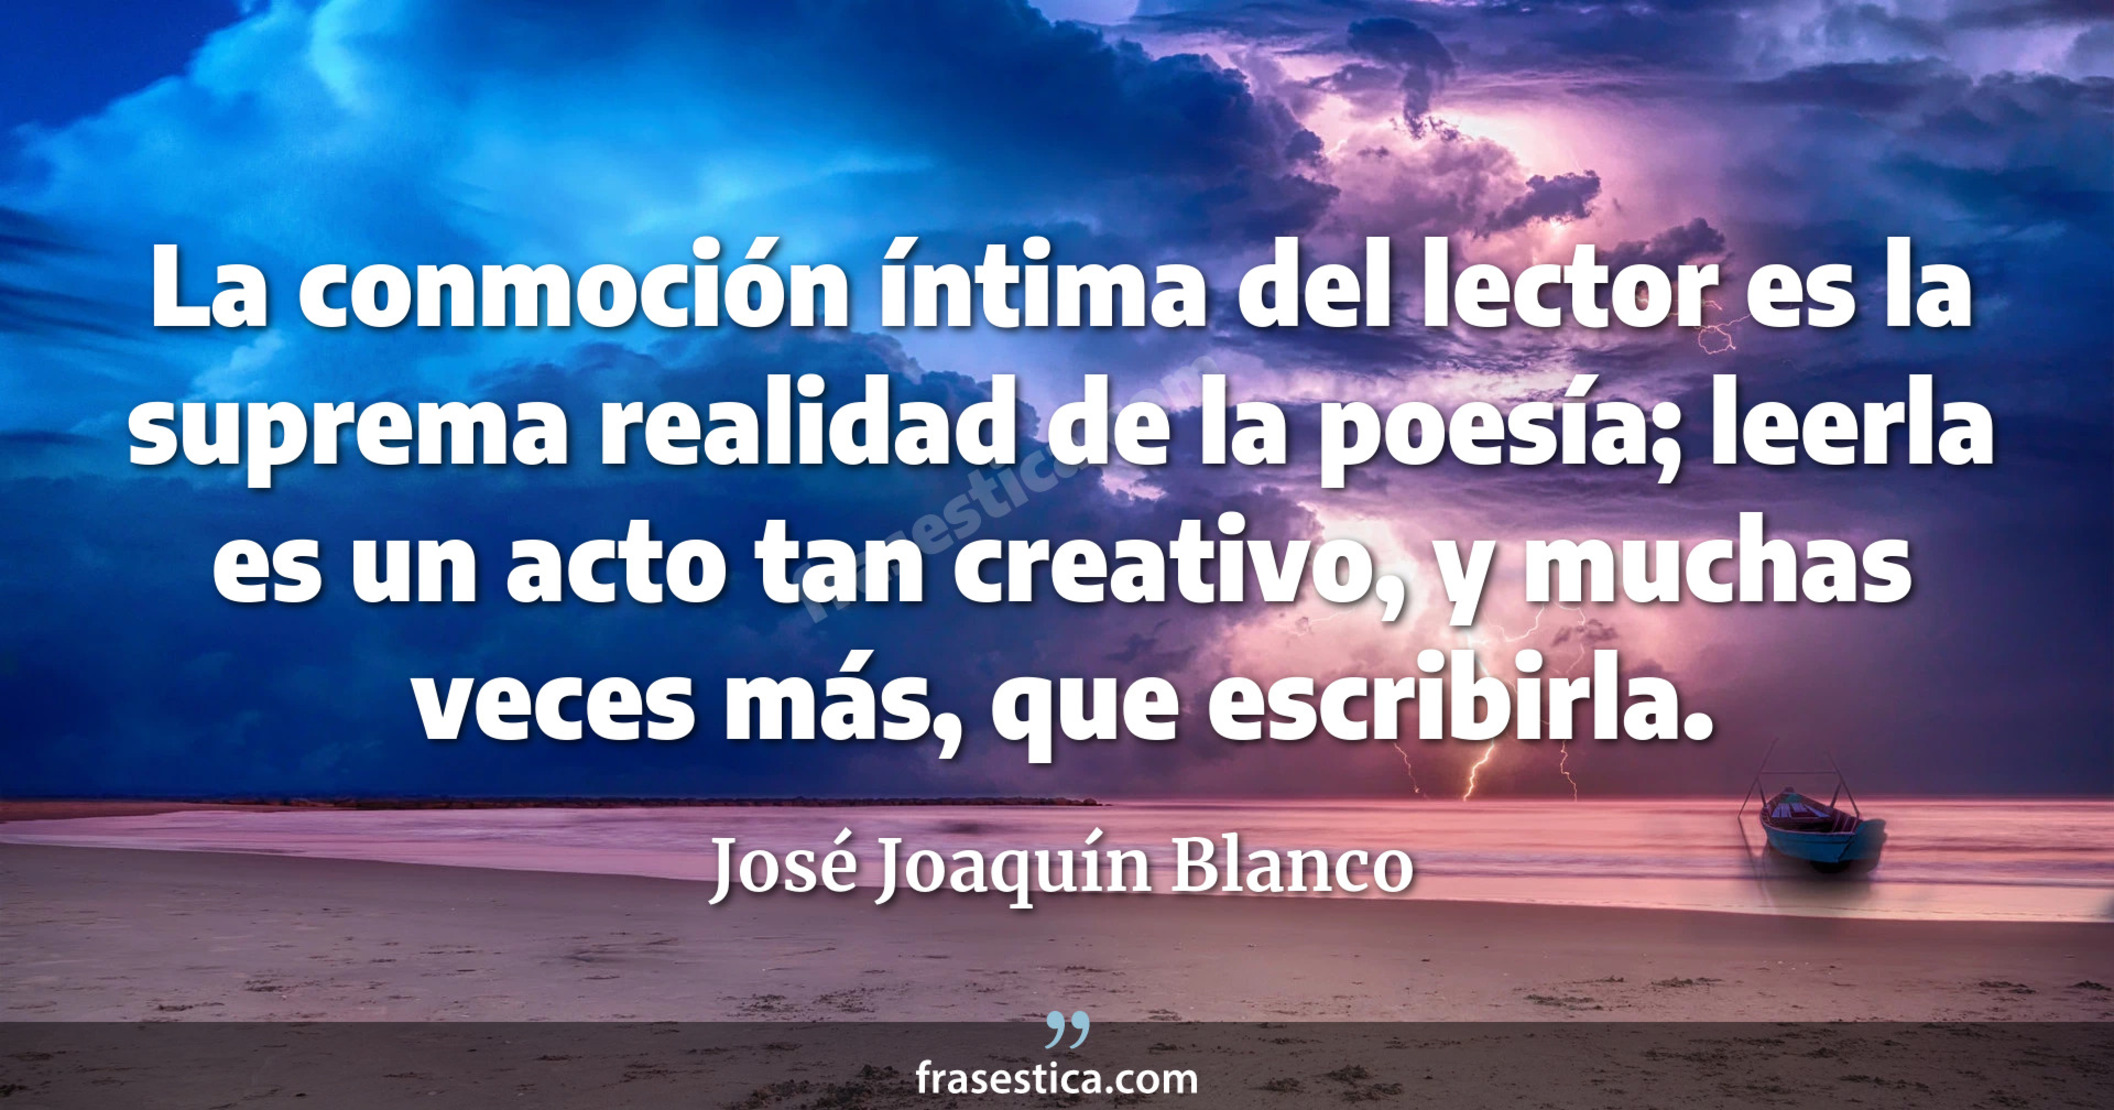 La conmoción íntima del lector es la suprema realidad de la poesía; leerla es un acto tan creativo, y muchas veces más, que escribirla. - José Joaquín Blanco